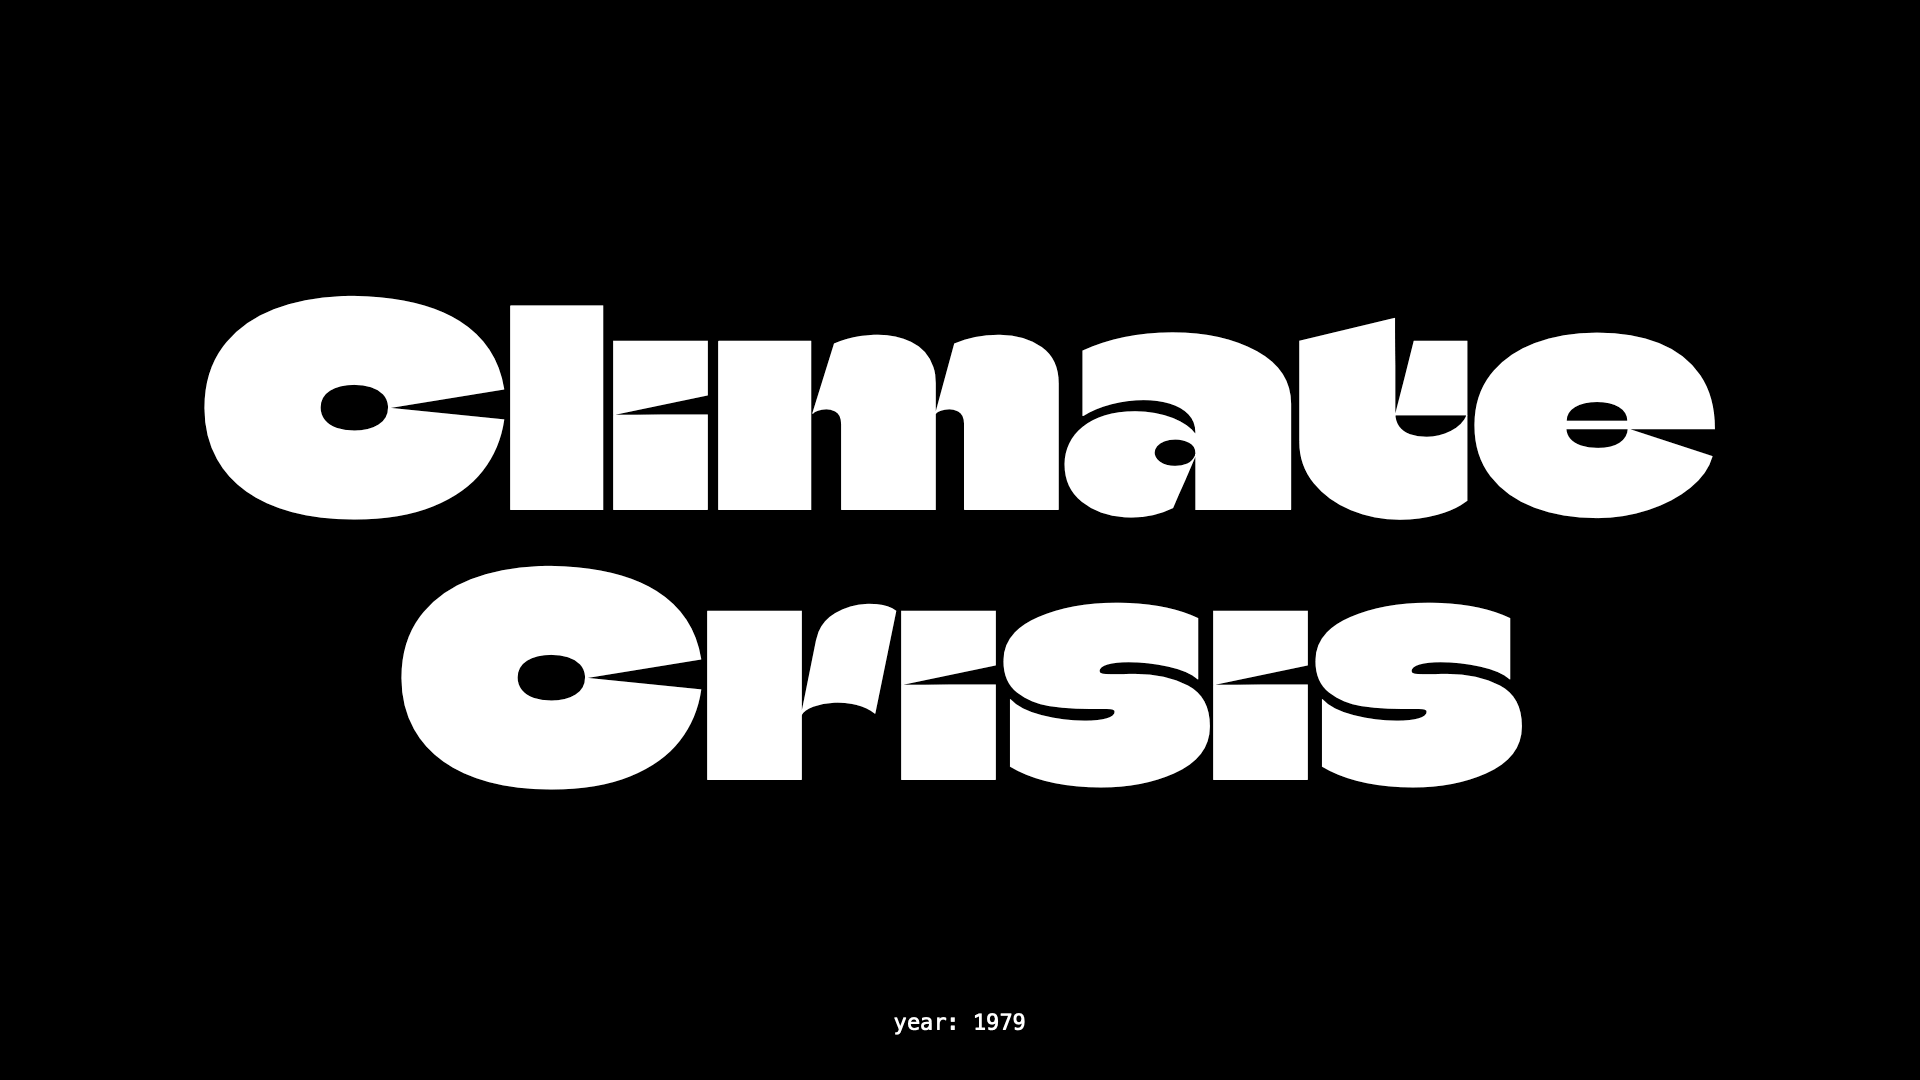 Climate Crisis Font